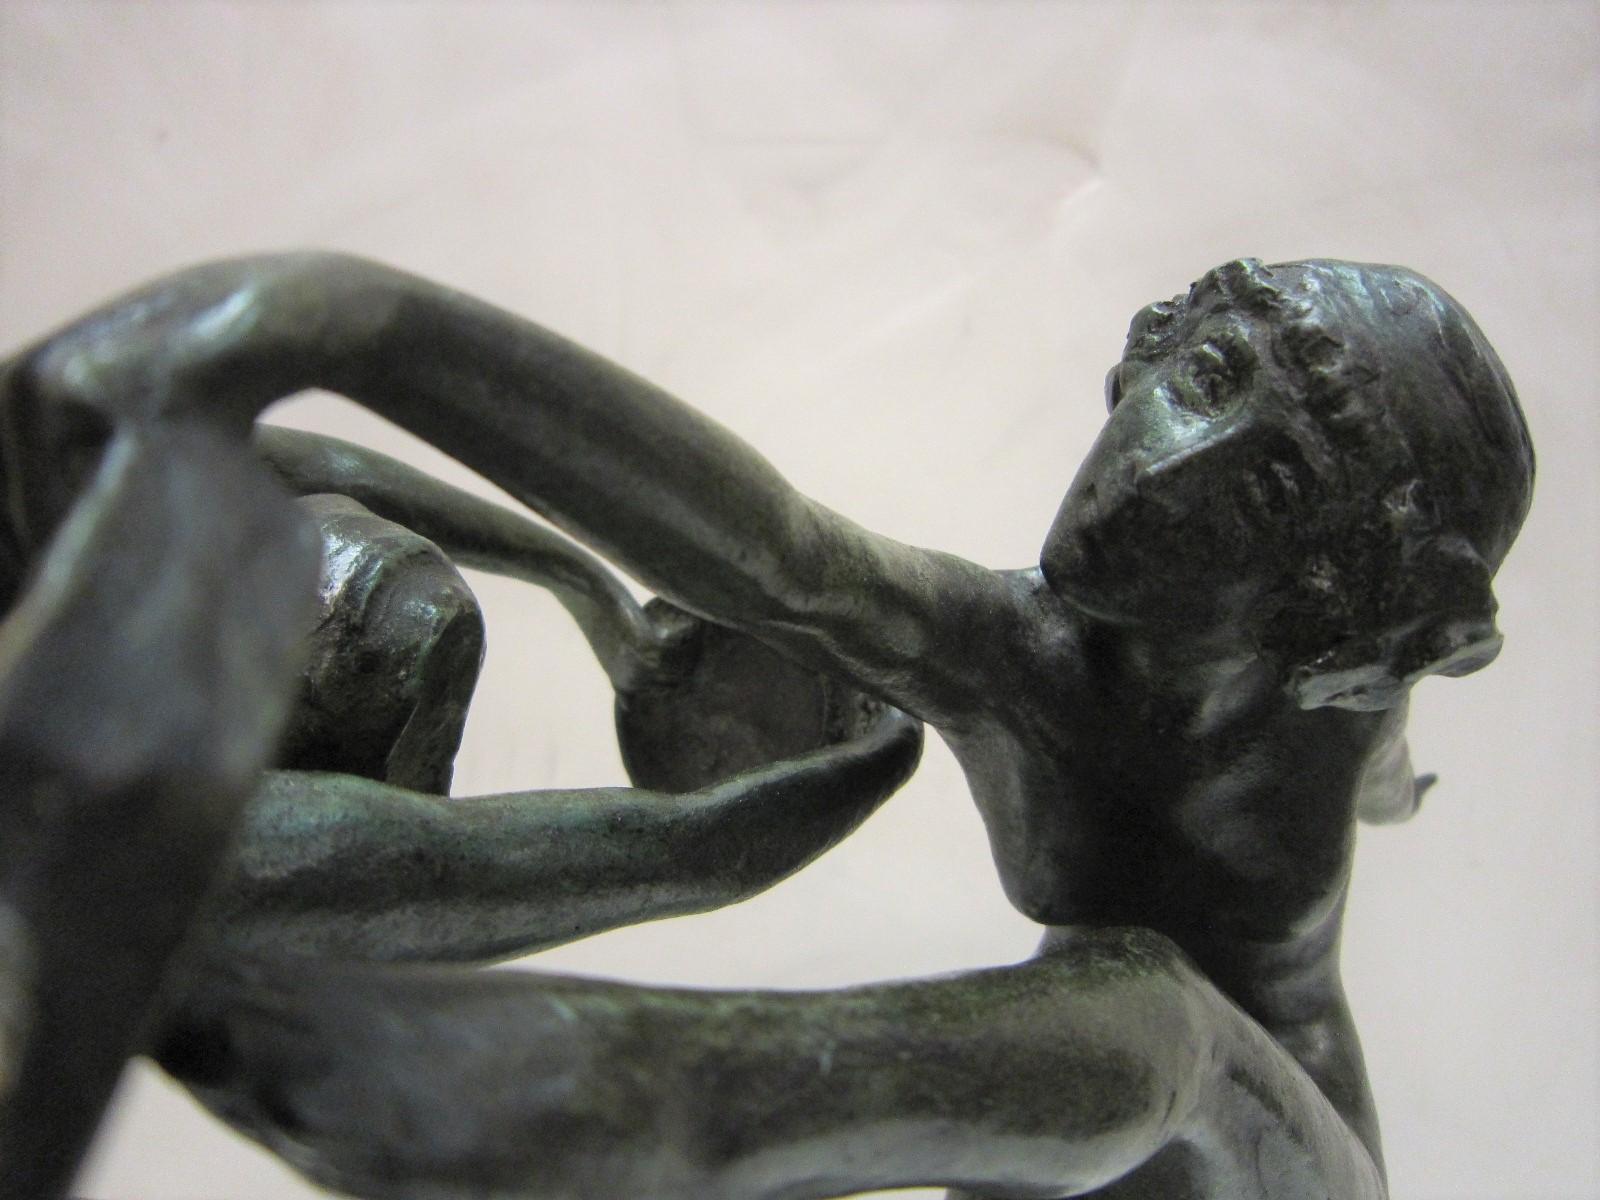 1925 French Art Deco Bronze Sculpture of Dancers Signed Paul de Boulogne  6